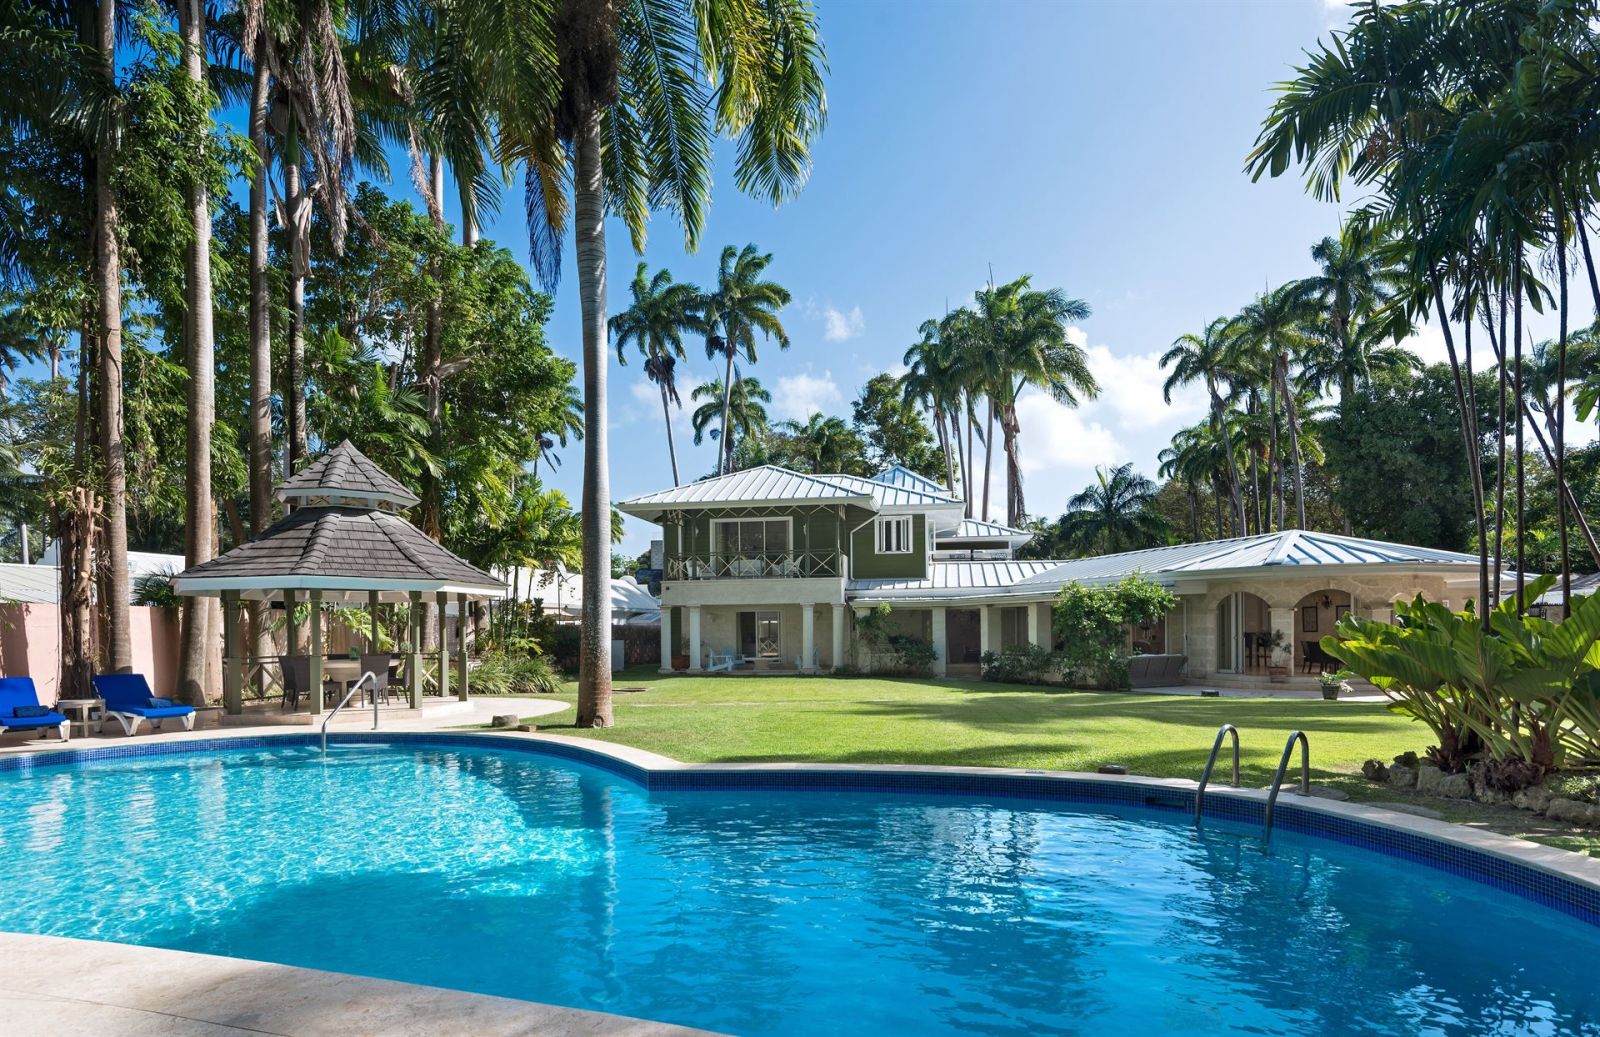 Five Bedroom holiday villas in Barbados | Properties with 5 bedrooms or ...